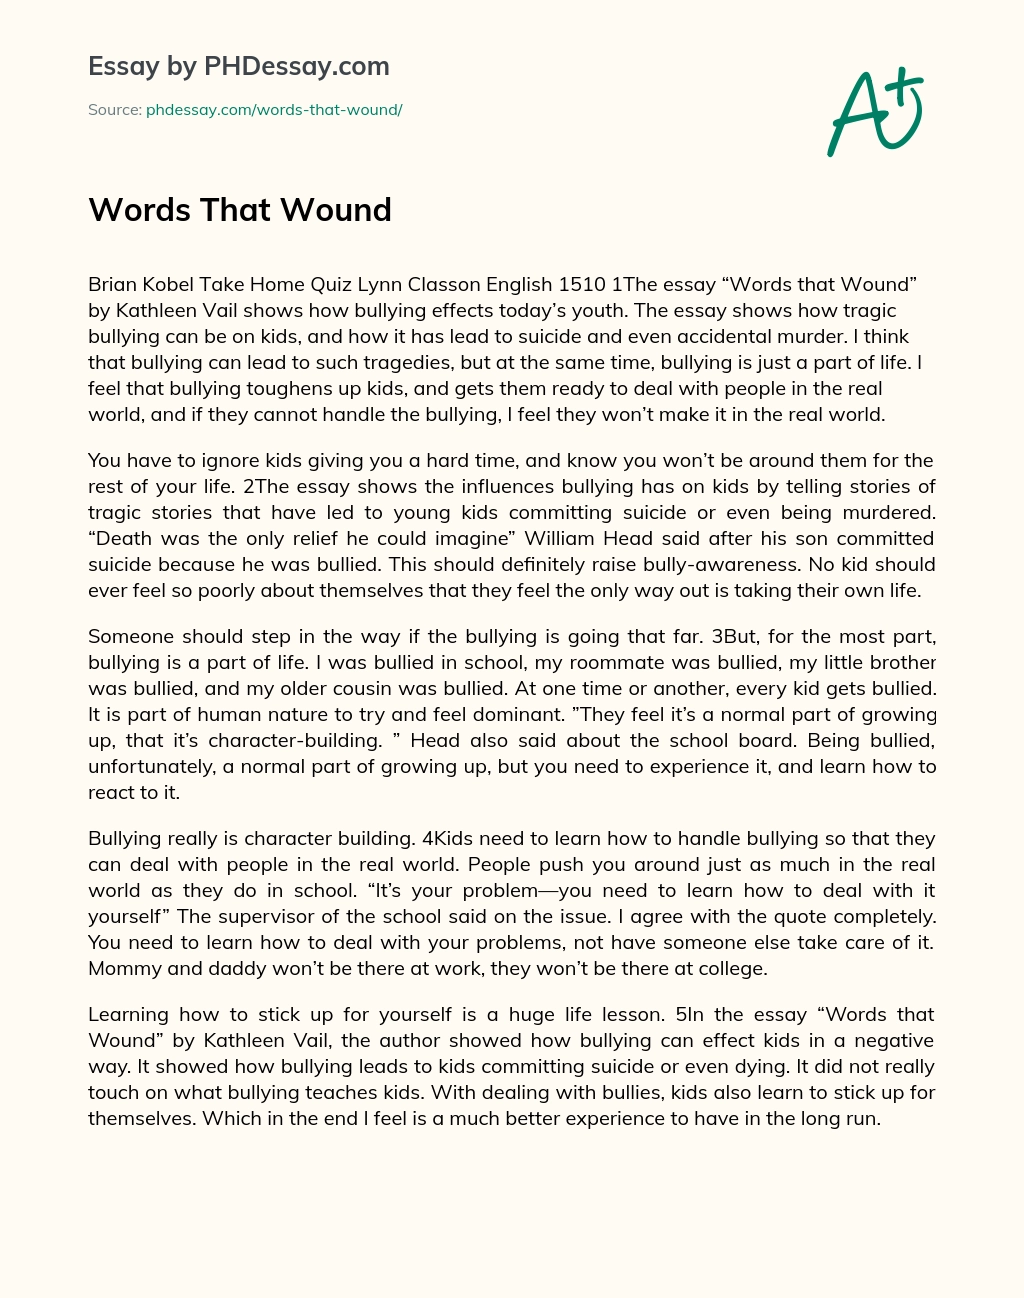 Words That Wound essay